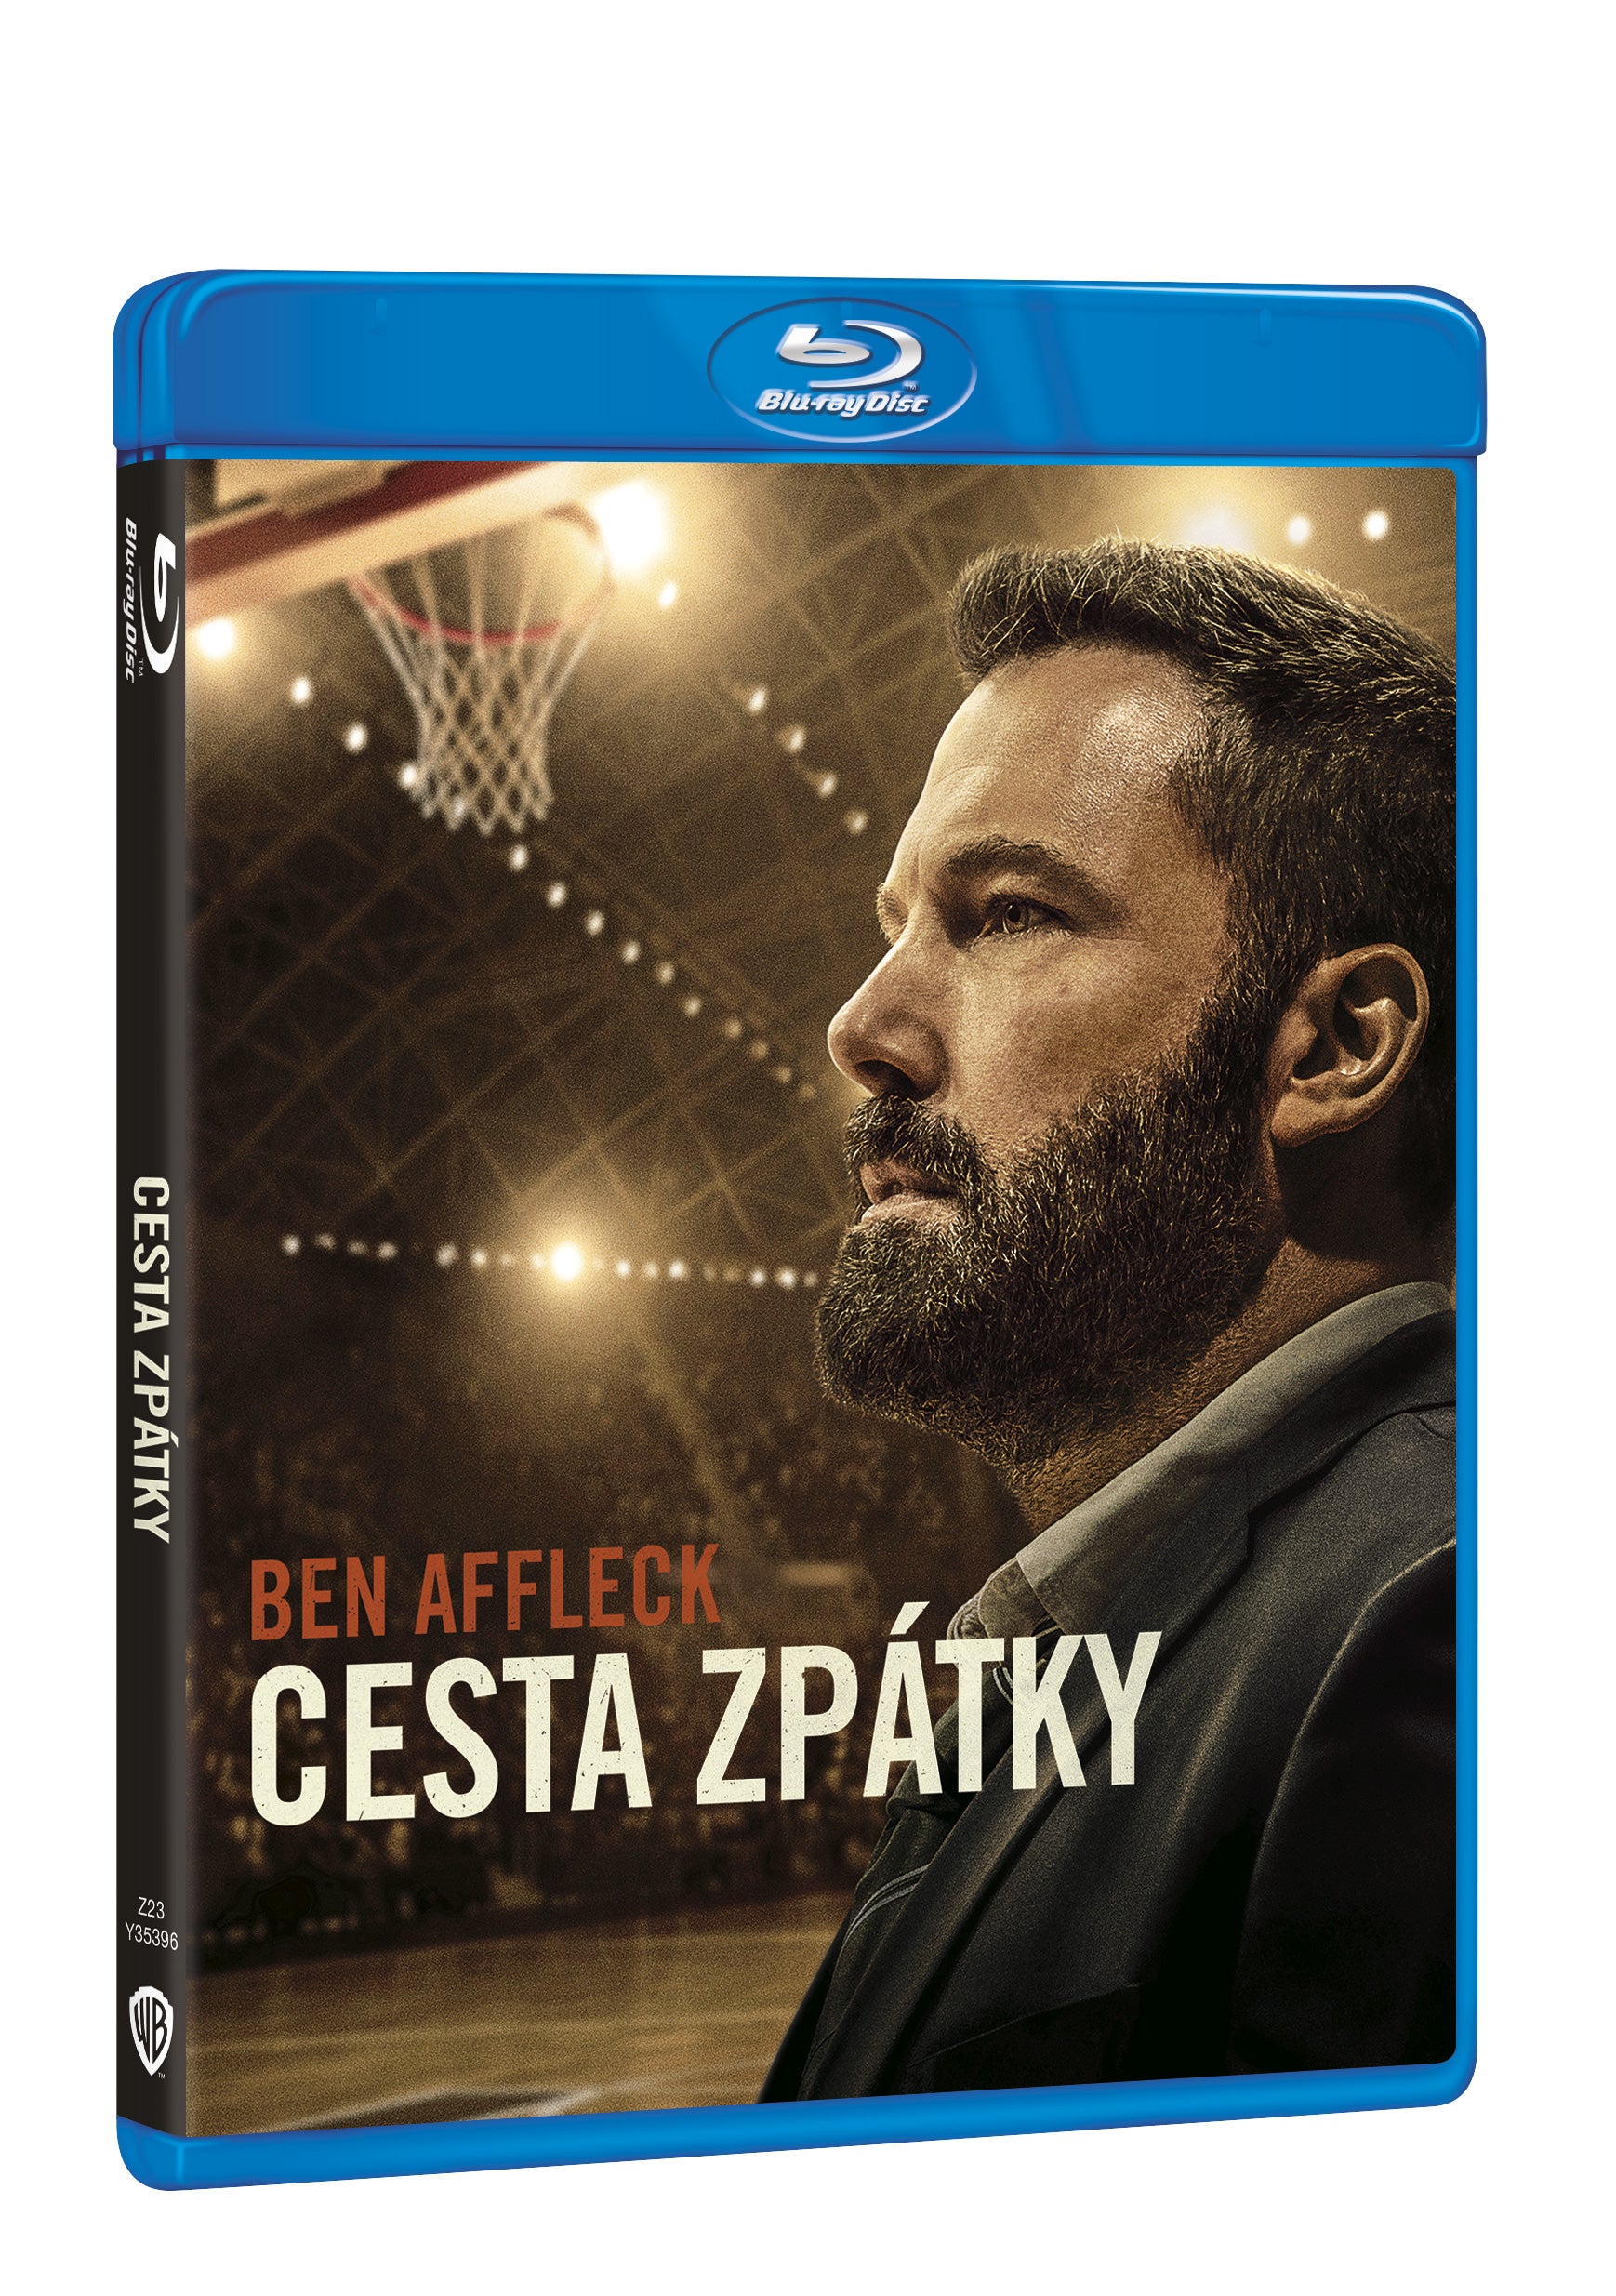 Cesta zpatky BD / The Way Back - Czech version